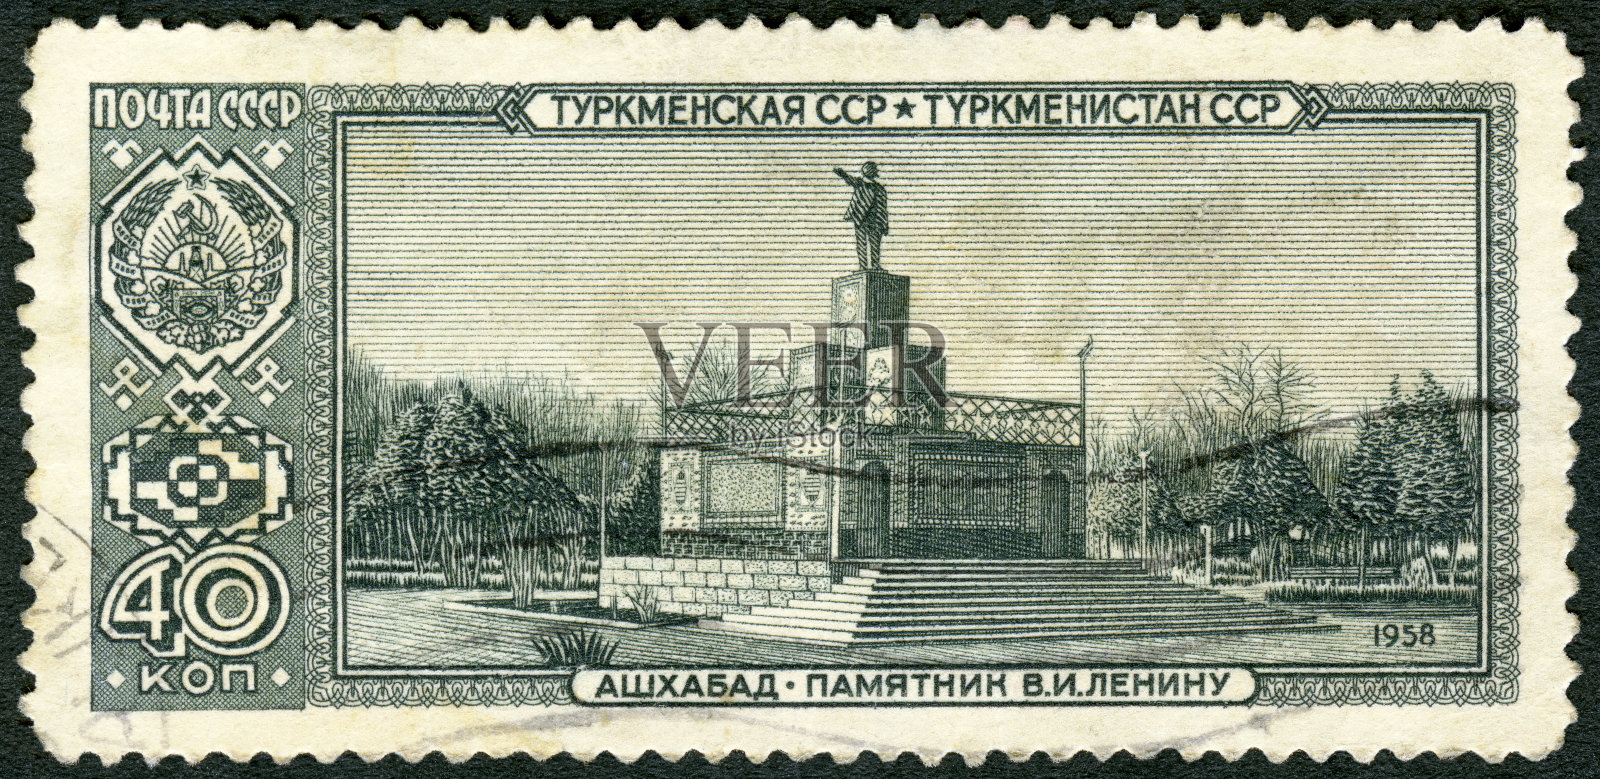 来自苏联的取消邮票显示列宁雕像，阿什哈巴德，土库曼苏维埃社会主义共和国，苏维埃共和国首都照片摄影图片